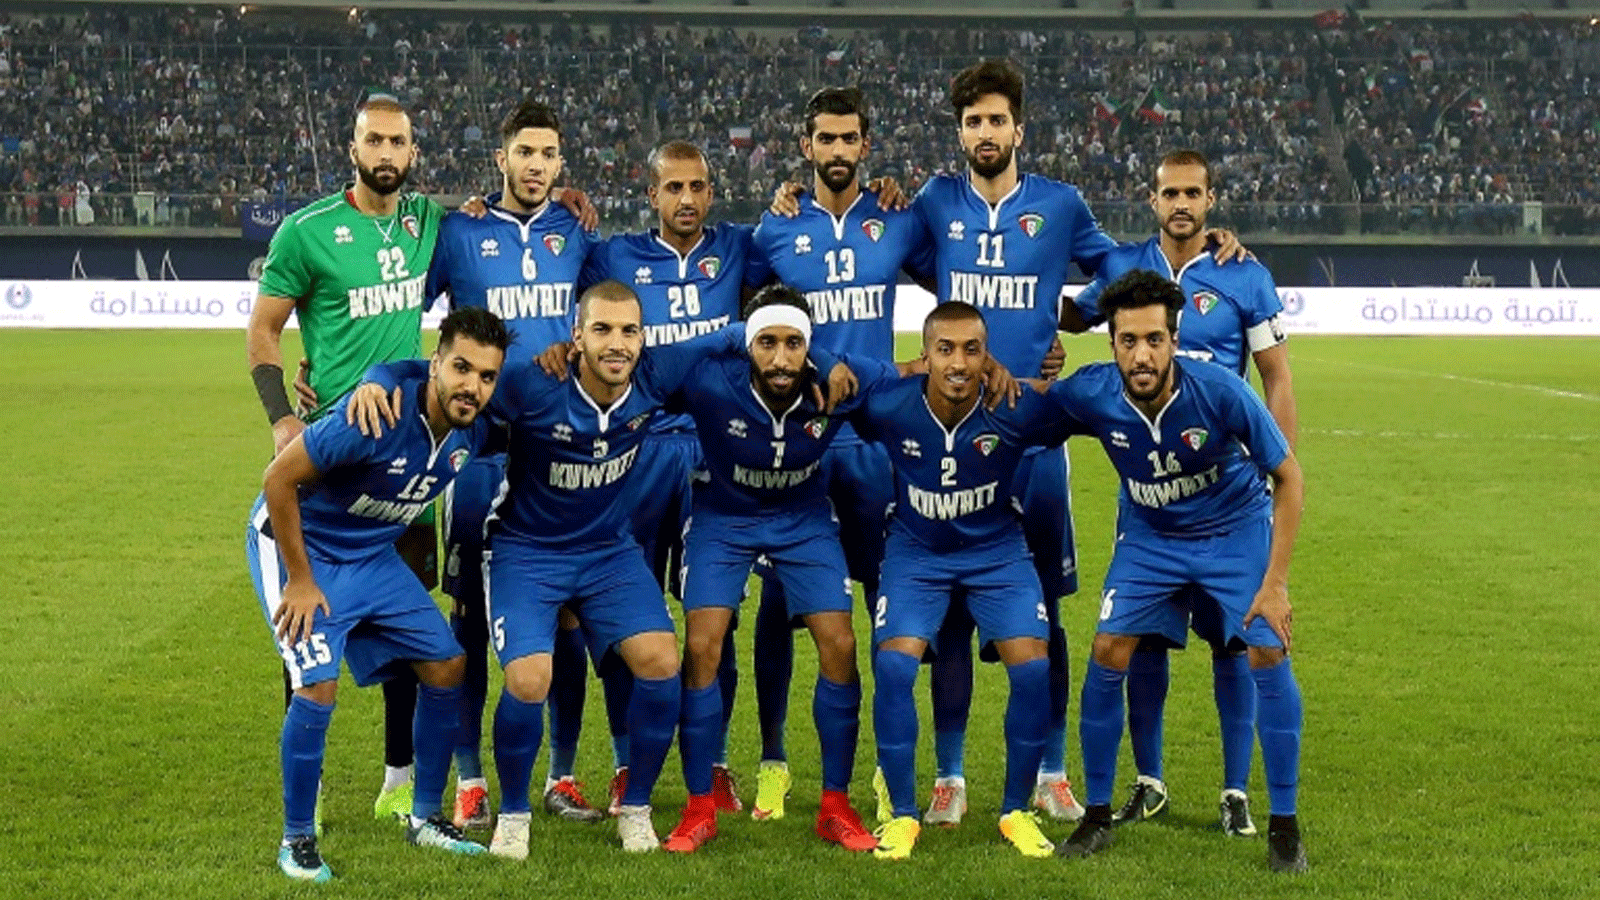  الكويت توجت بلقب كأس الخليج عشر مرات (رقم قياسي)